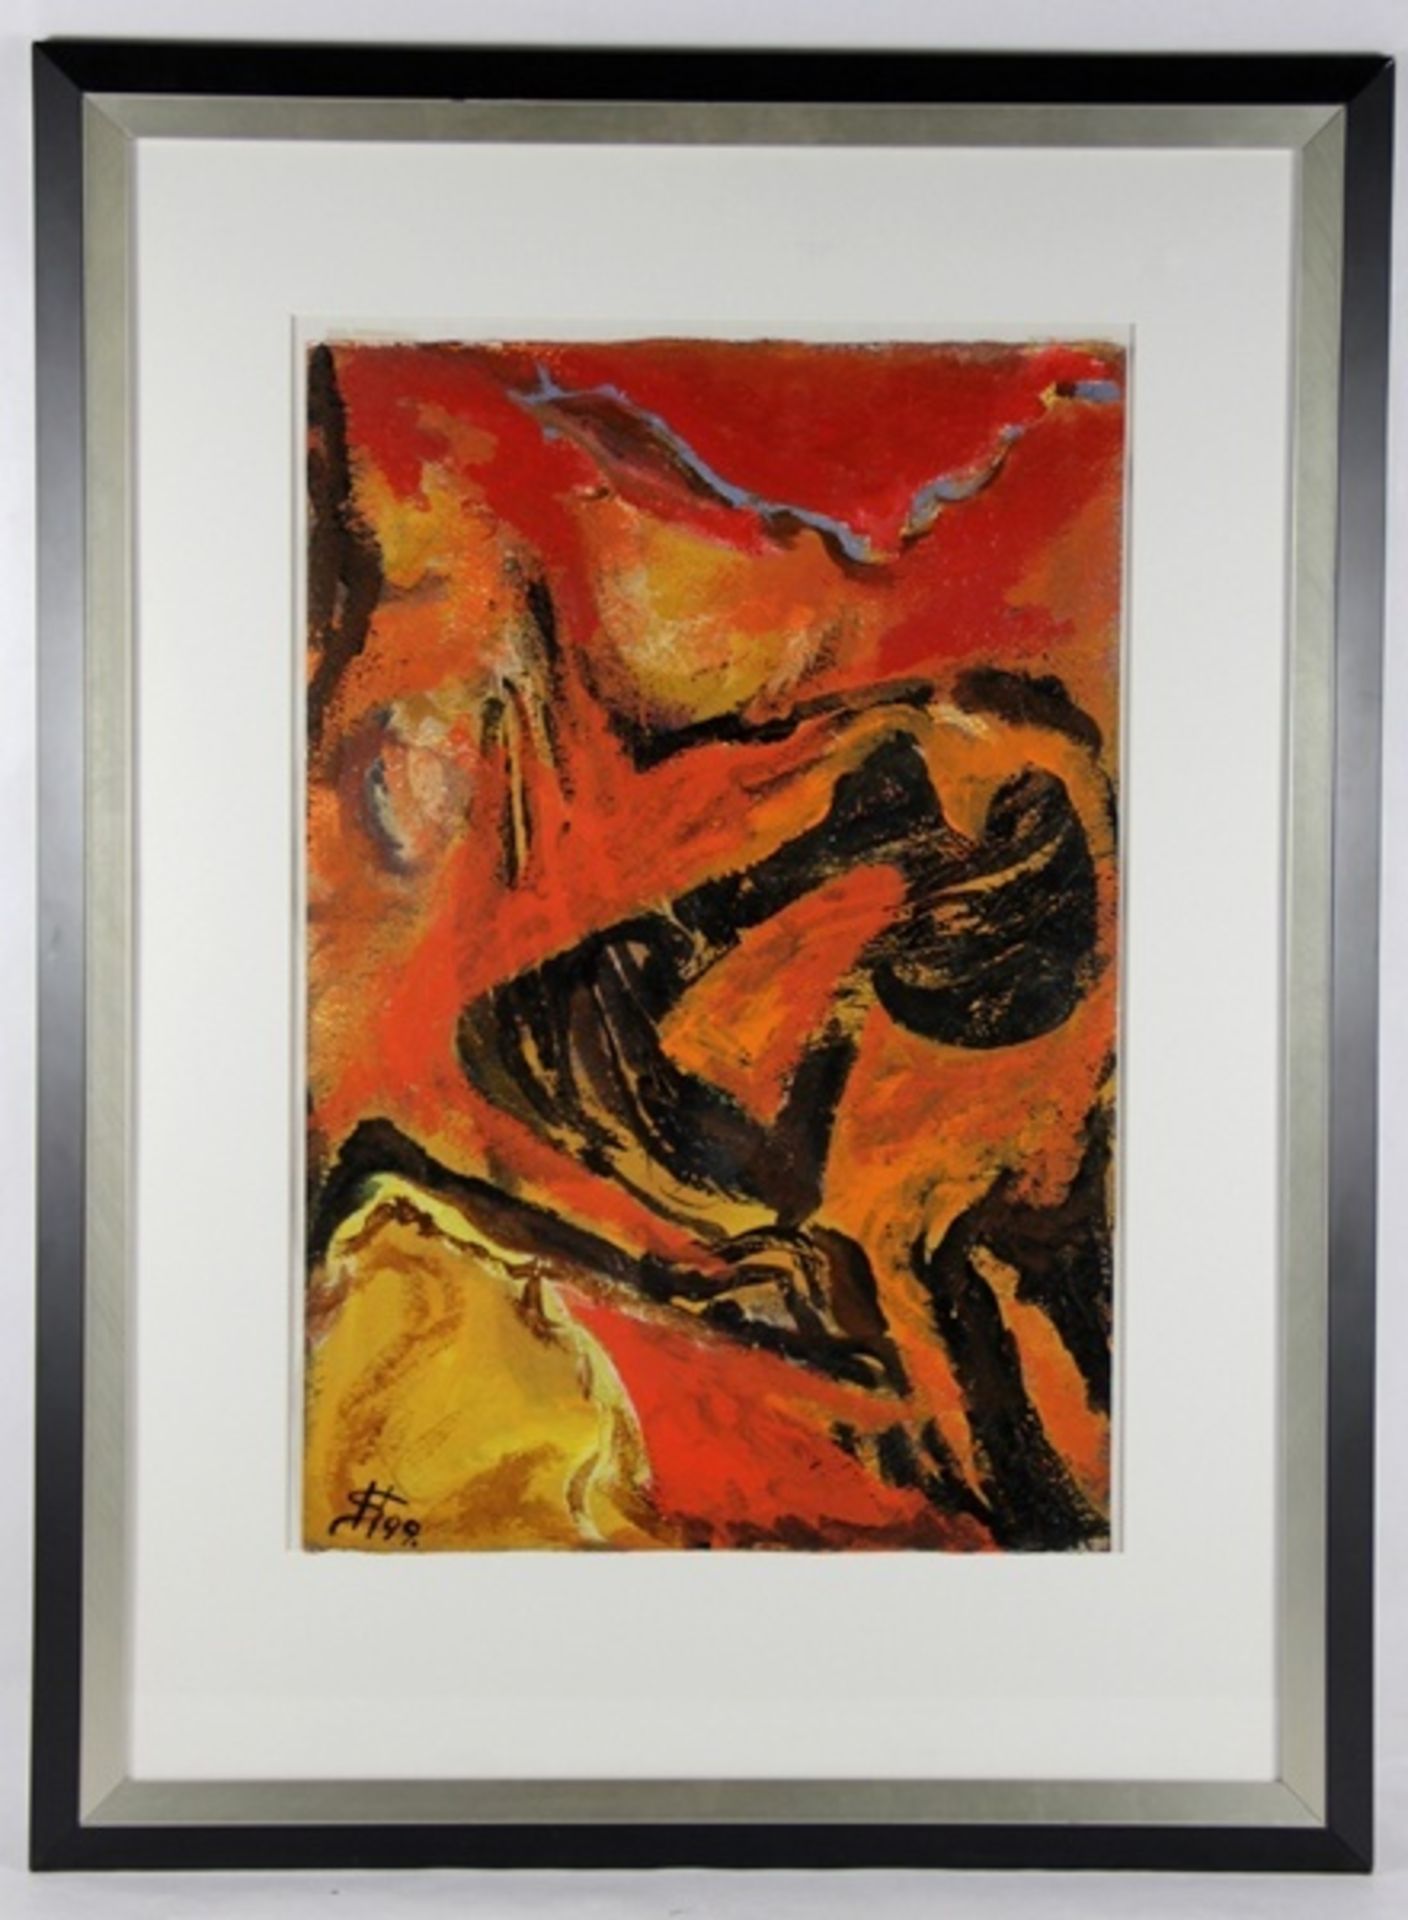 Unbekannter Künstler1999, abstraktes Gemälde in flammenden Farben, unten links ligiertes Monogramm